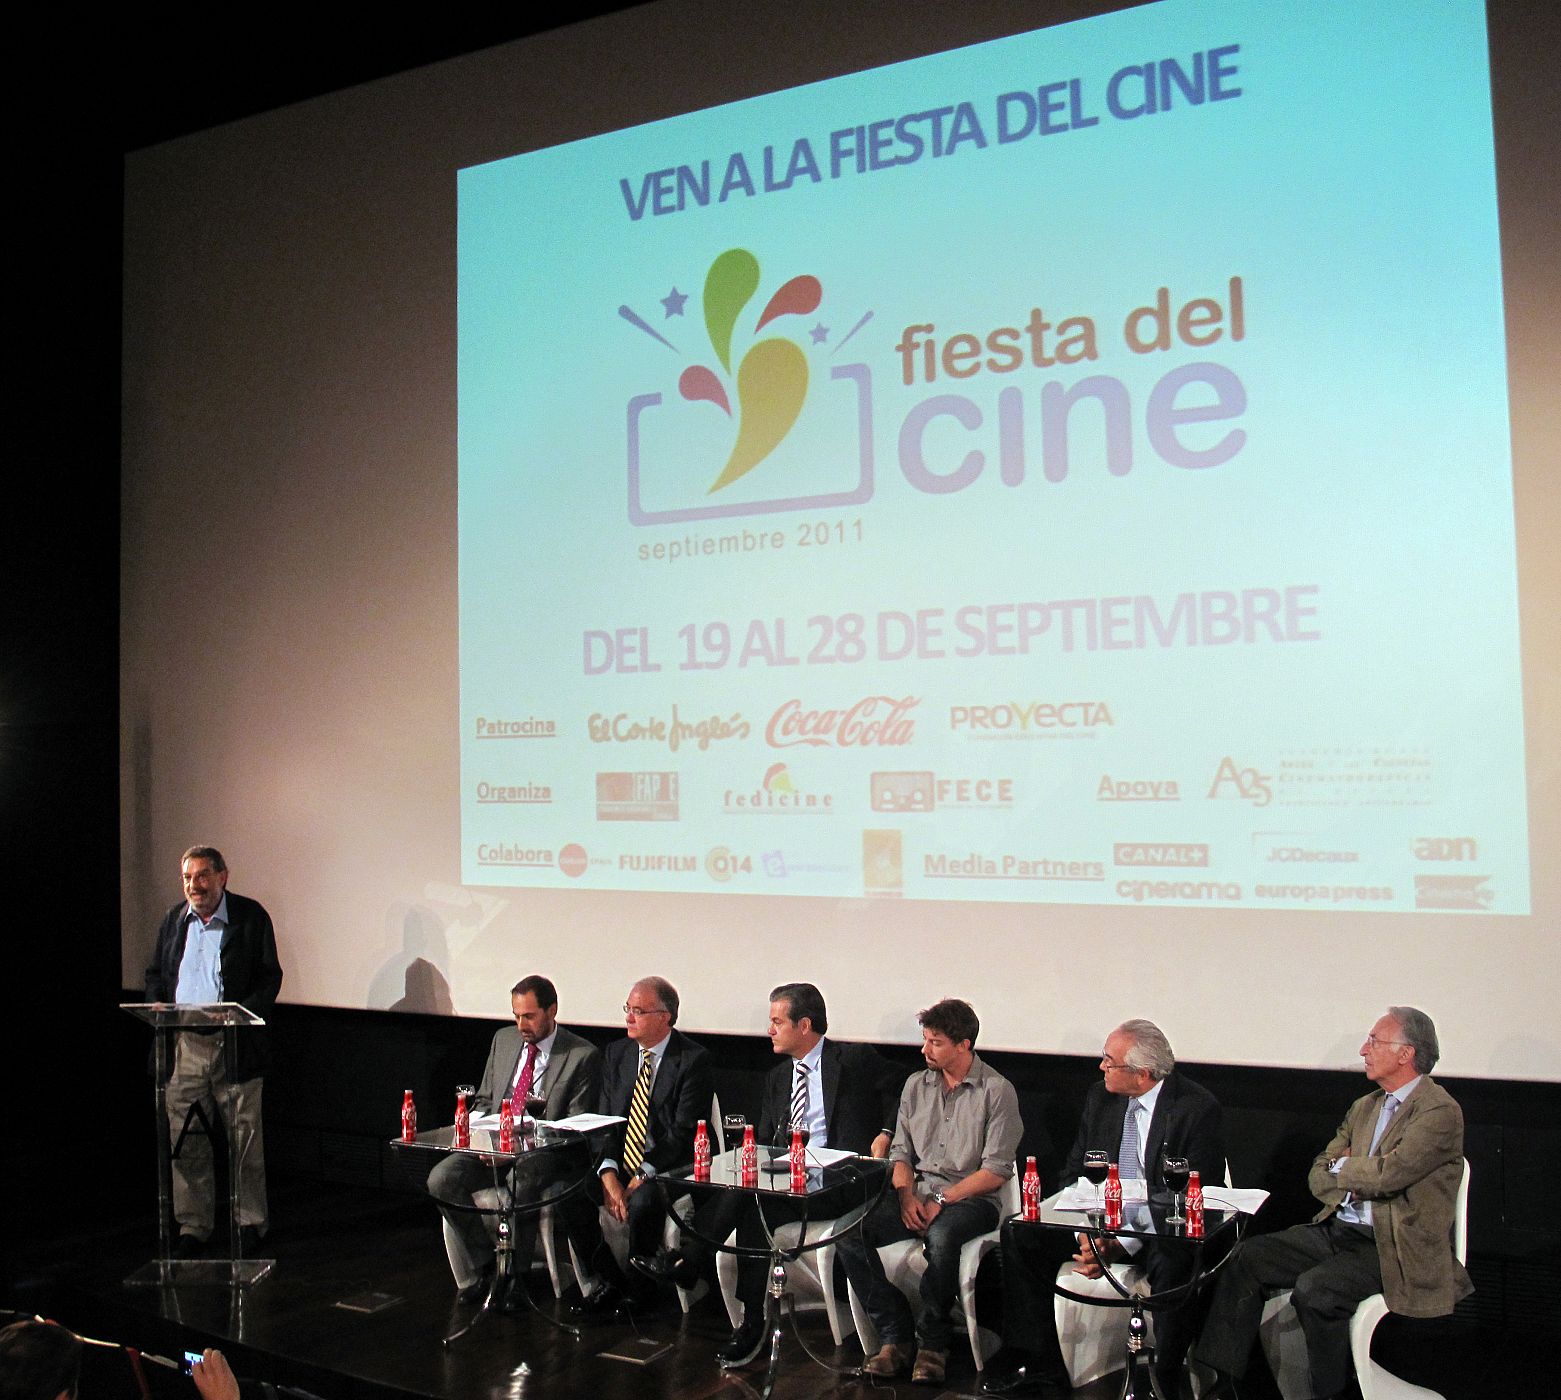 Distribuidores, exhibidores, productores y patrocionadores en la presentación de la Fiesta del Cine, junto al presidente de la Academia de Cine español.